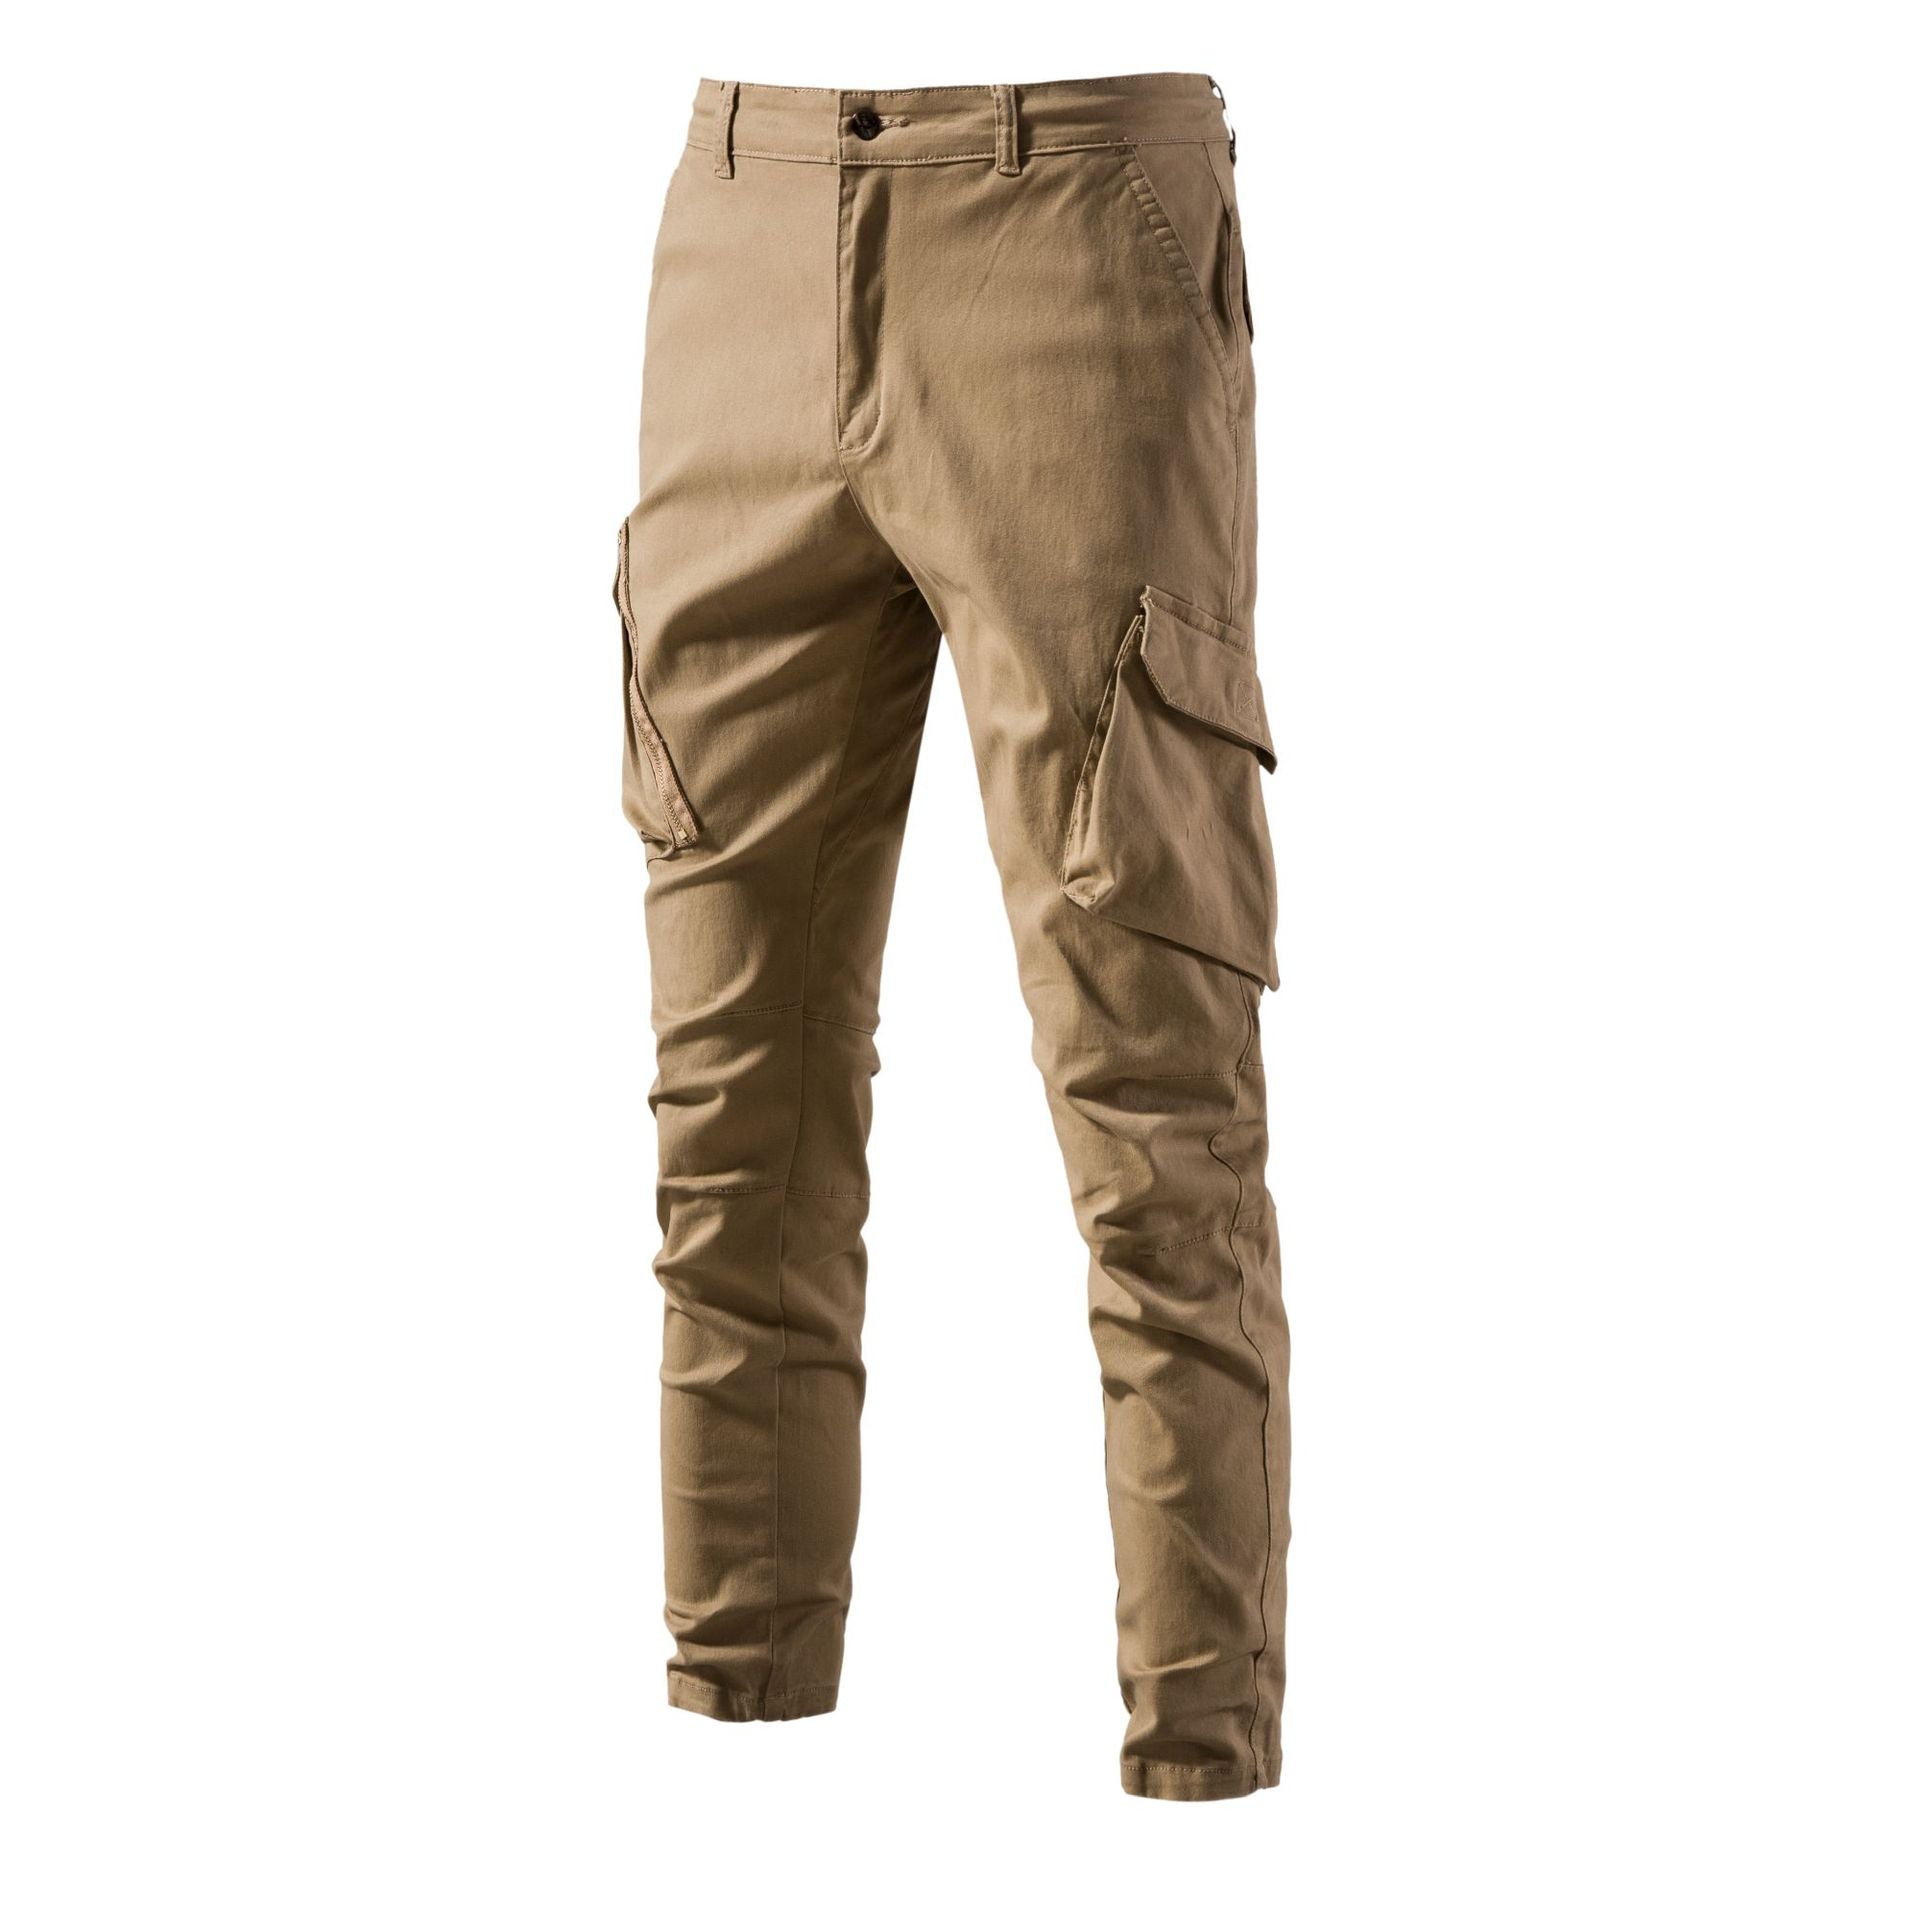 Men's Versatile Multi-pocket Solid Color Trousers